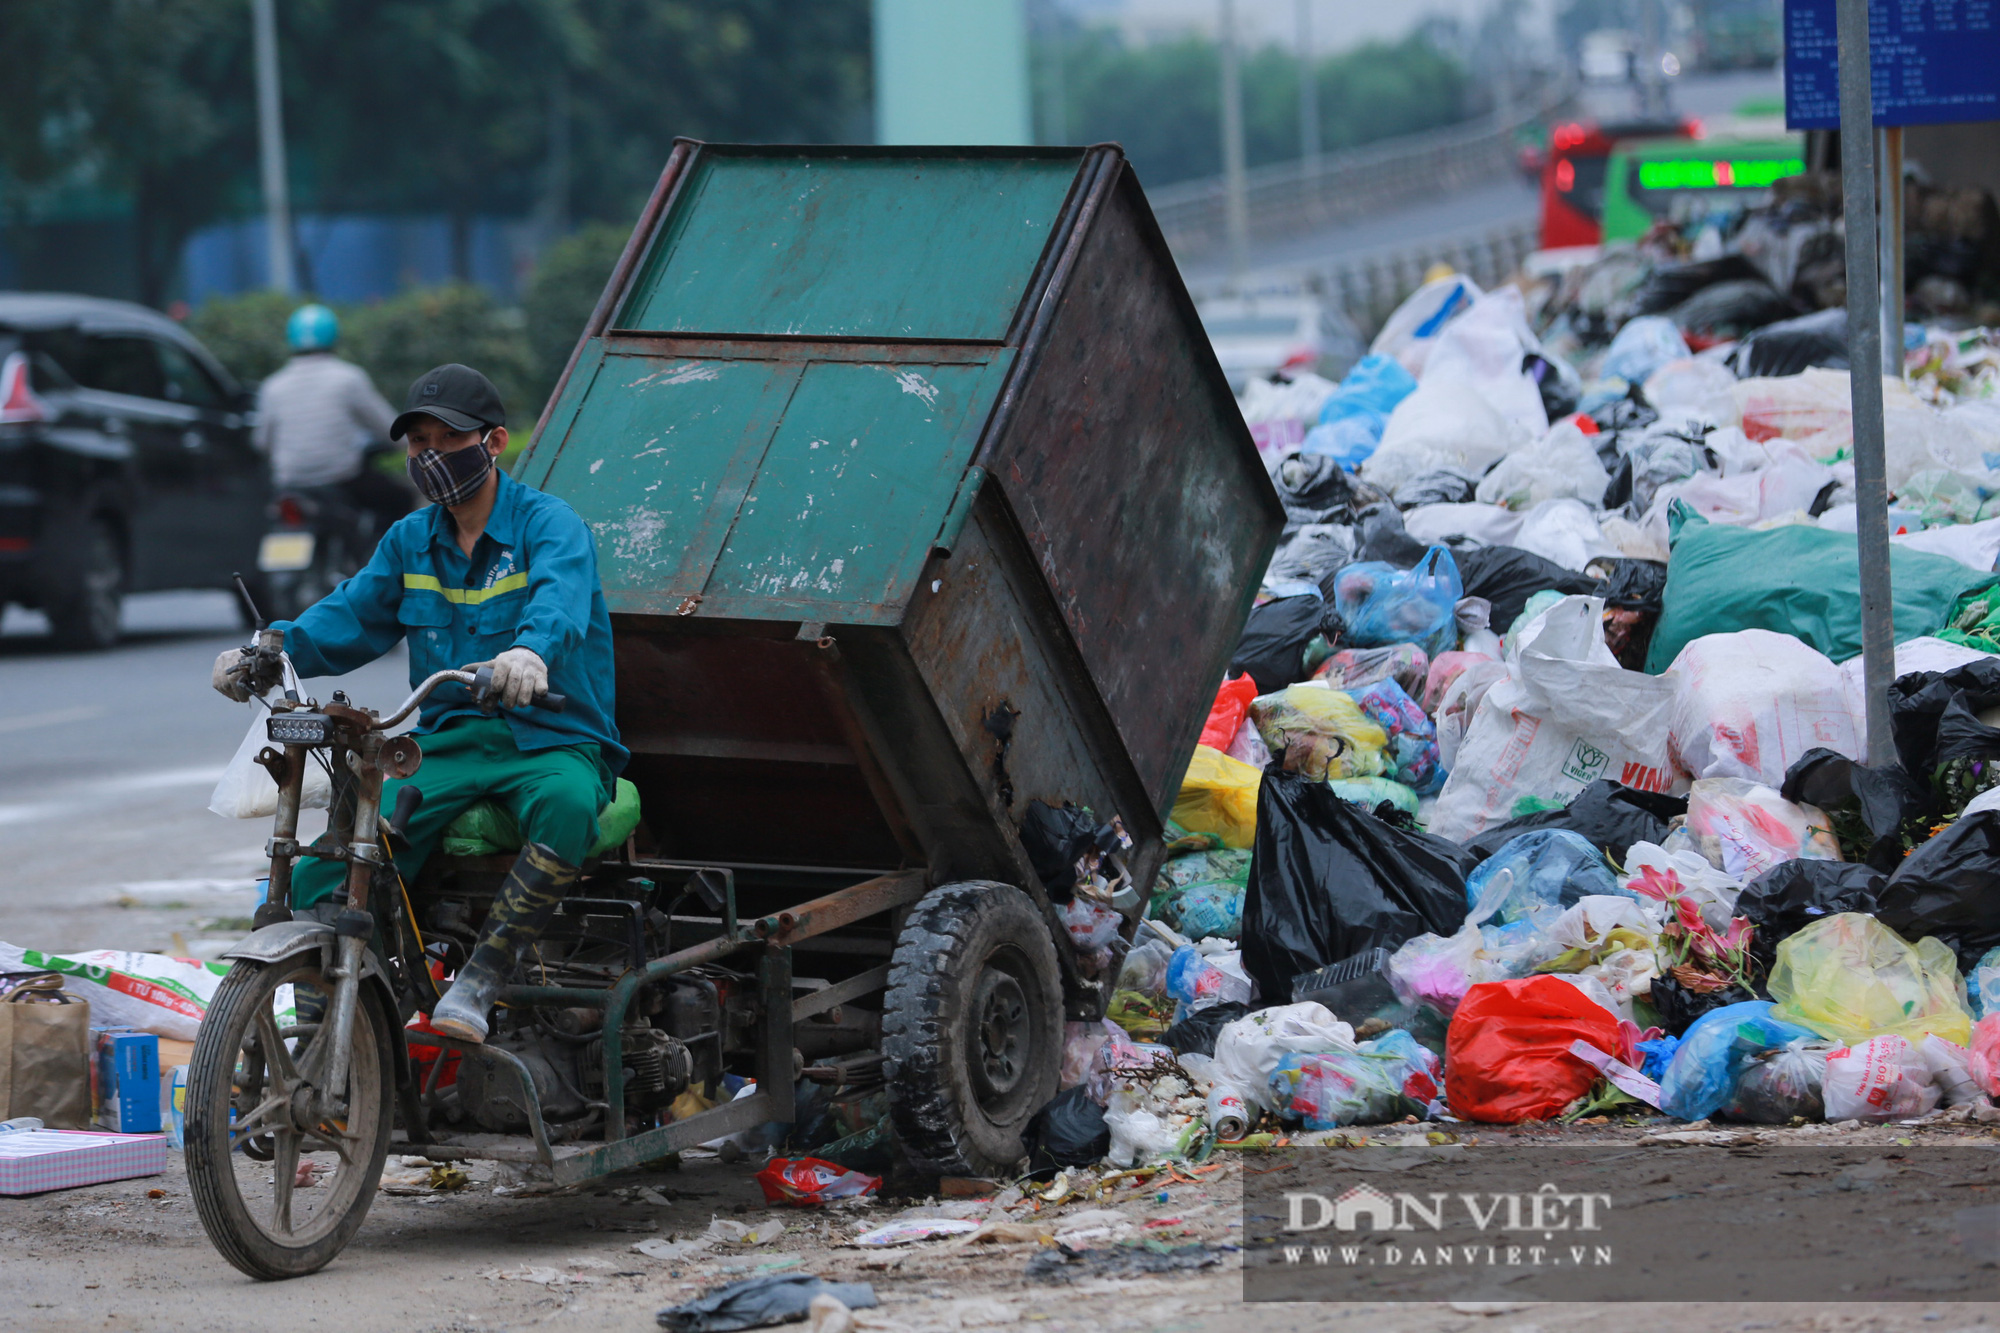 Bãi rác Nam Sơn bị chặn, người dân Hà Nội nín thở đi qua núi rác - Ảnh 7.